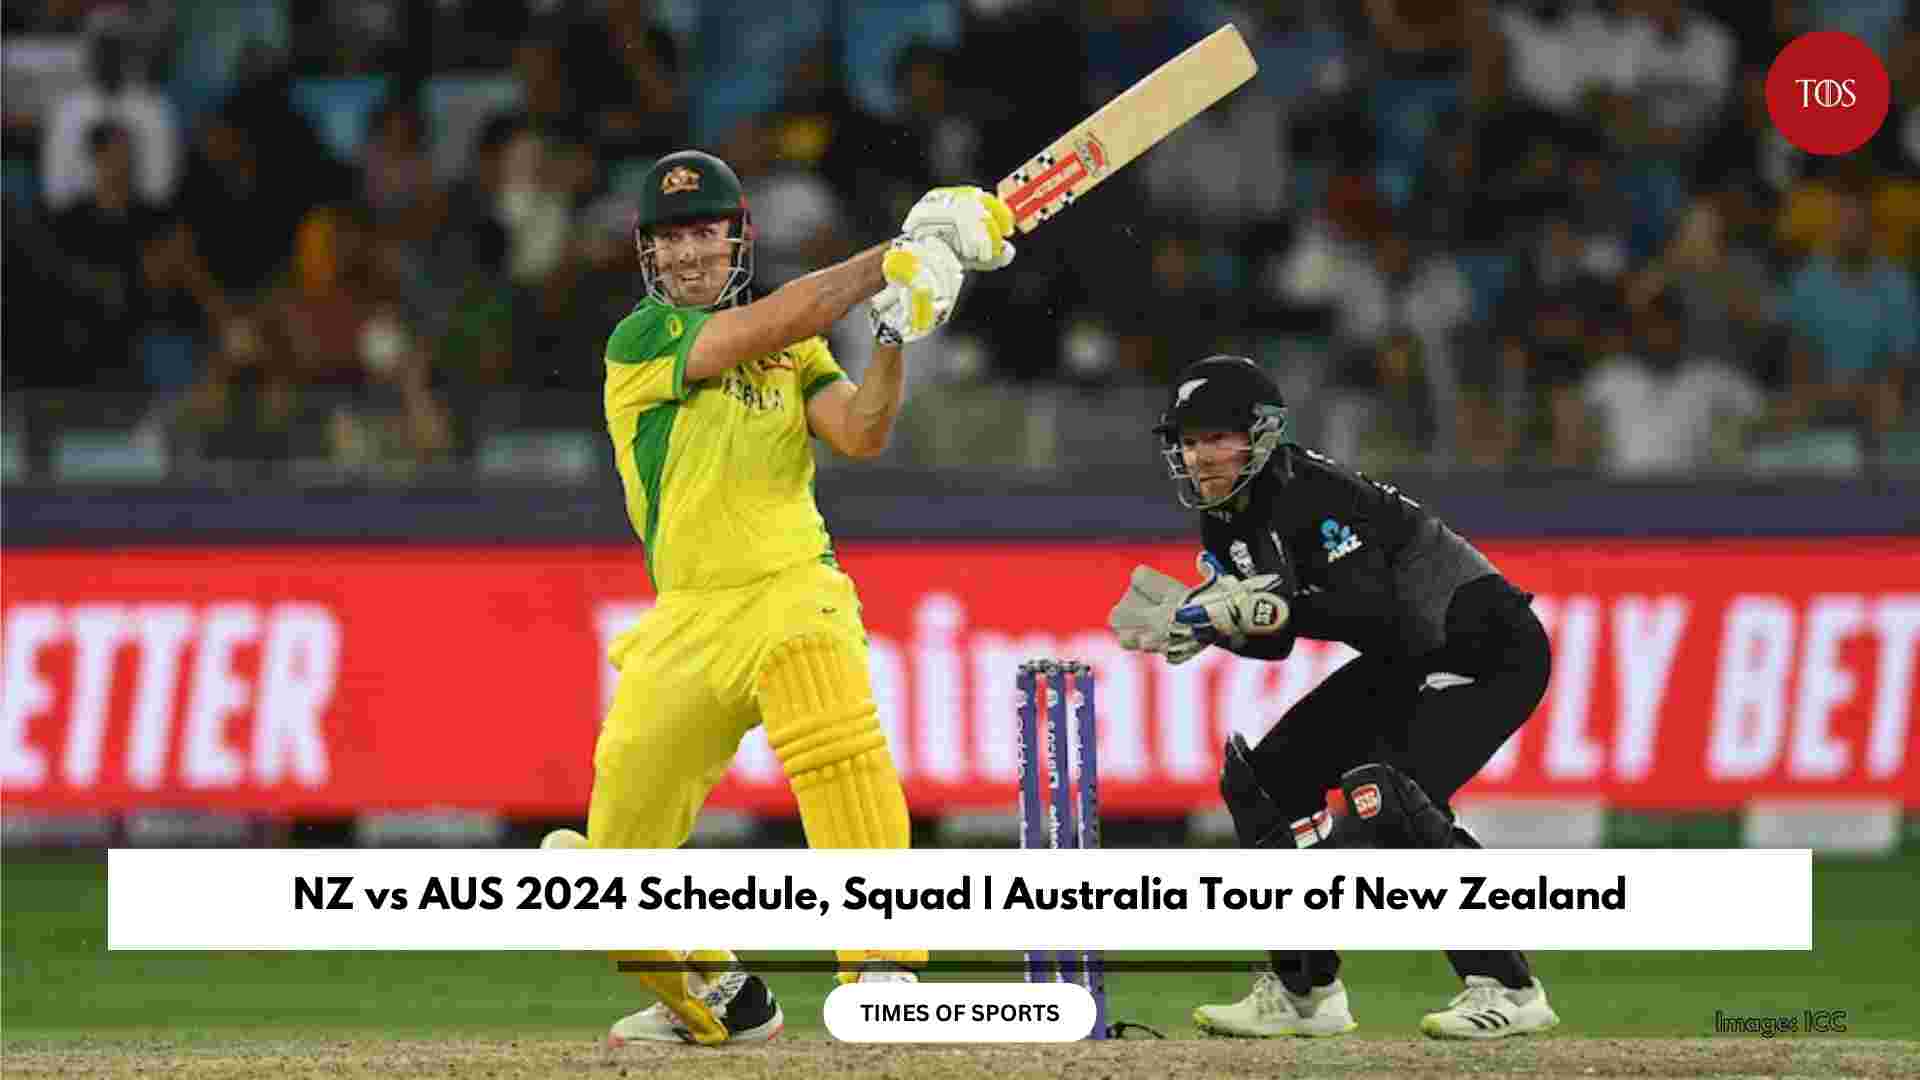 NZ vs AUS 2024 Schedule, Squad Australia Tour of New Zealand